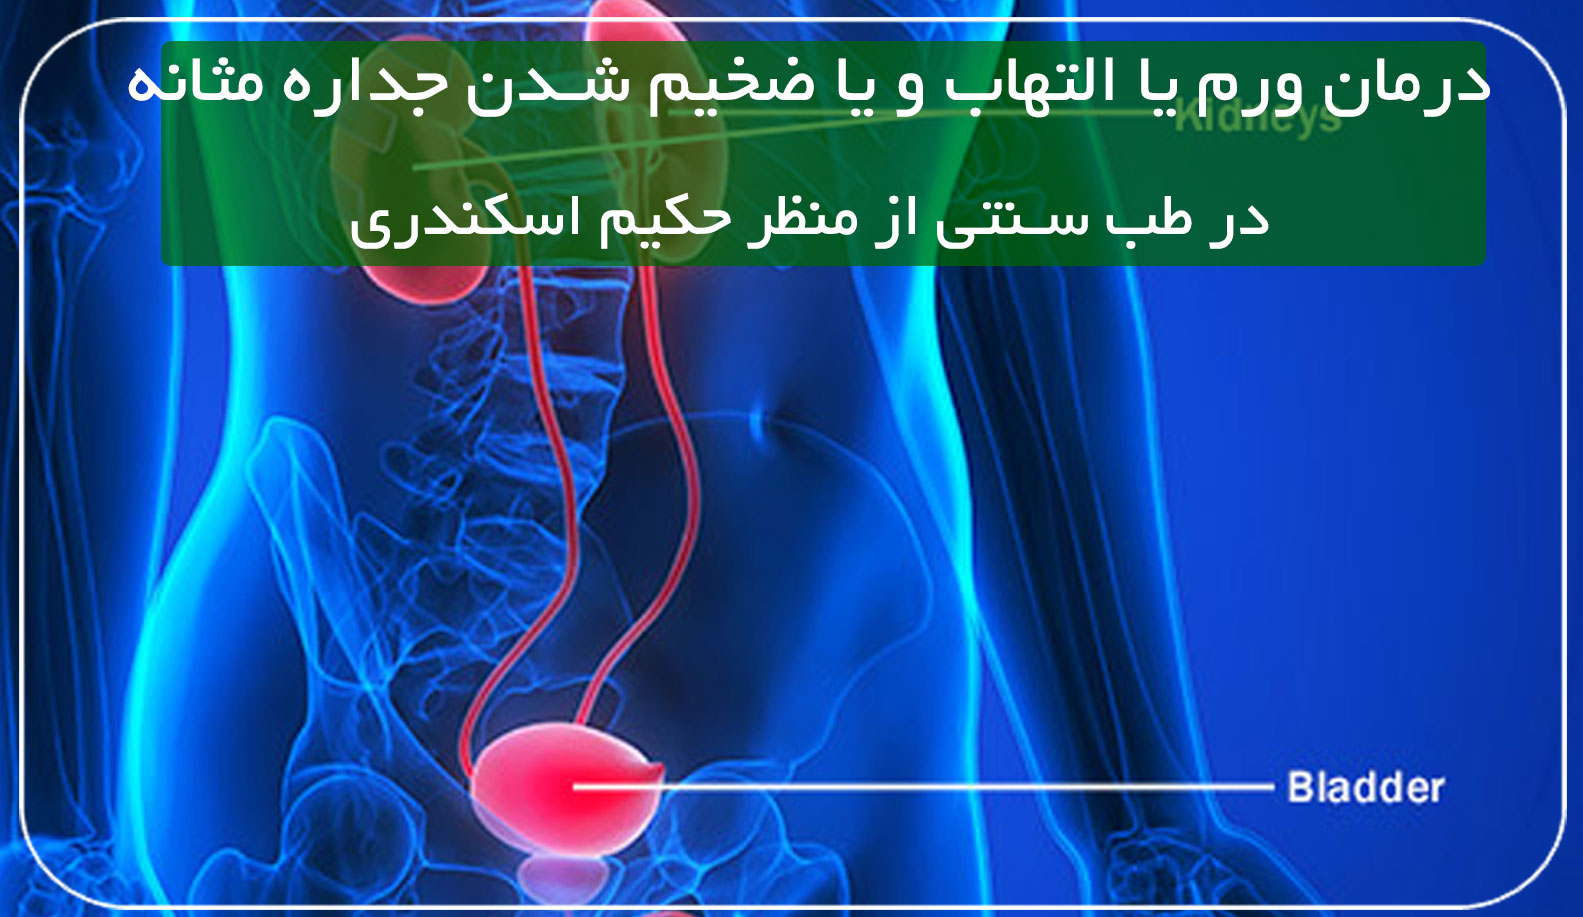 درمان ورم یا التهاب و یا ضخیم شدن جداره مثانه در طب سنتی حکیم اسکندری